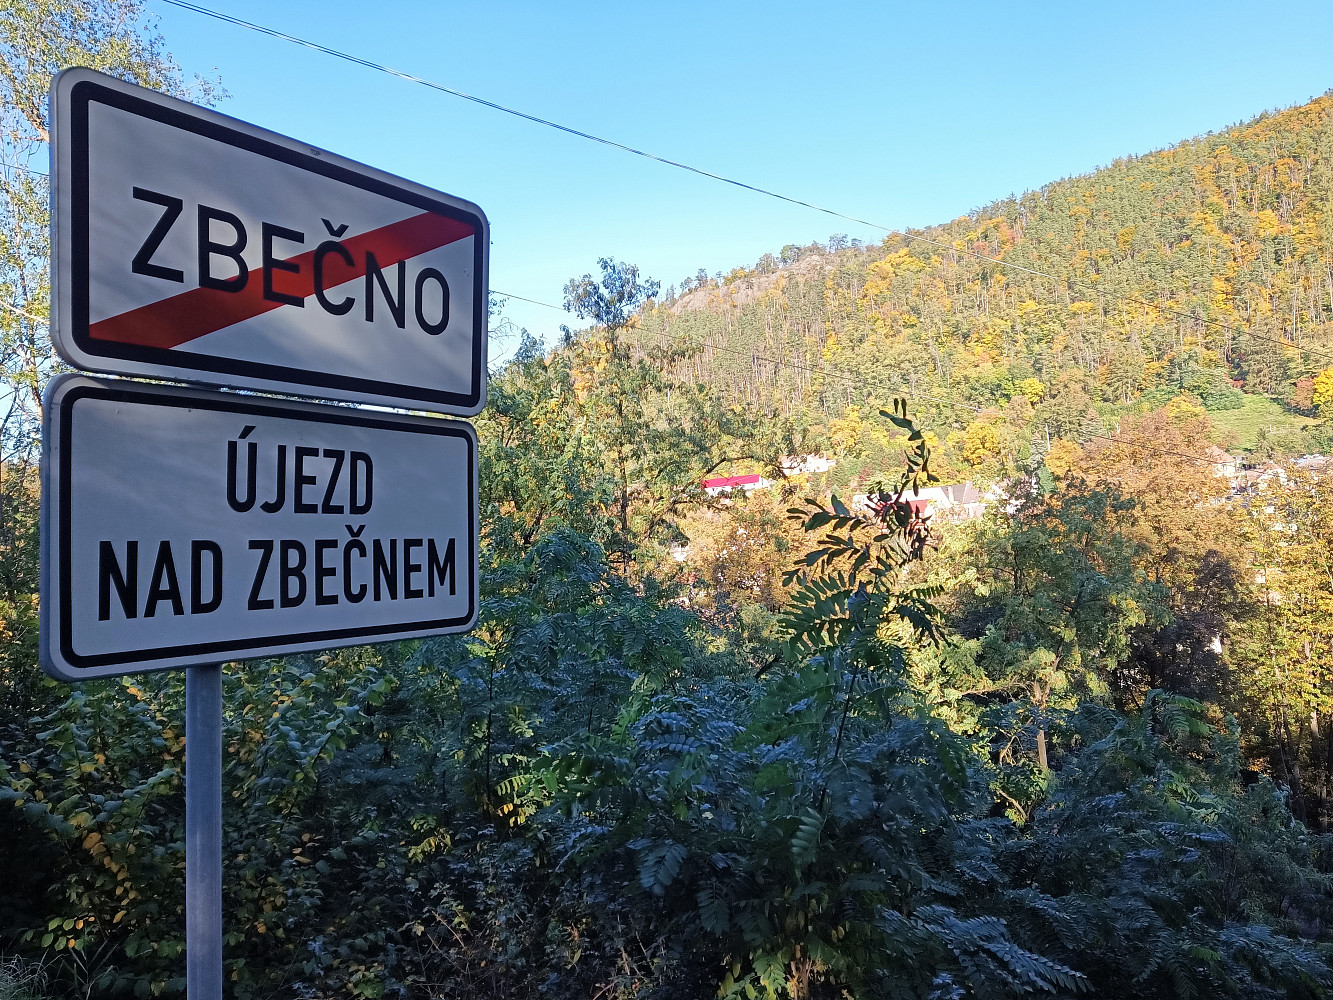 Zbečno - Újezd nad Zbečnem, okres Rakovník